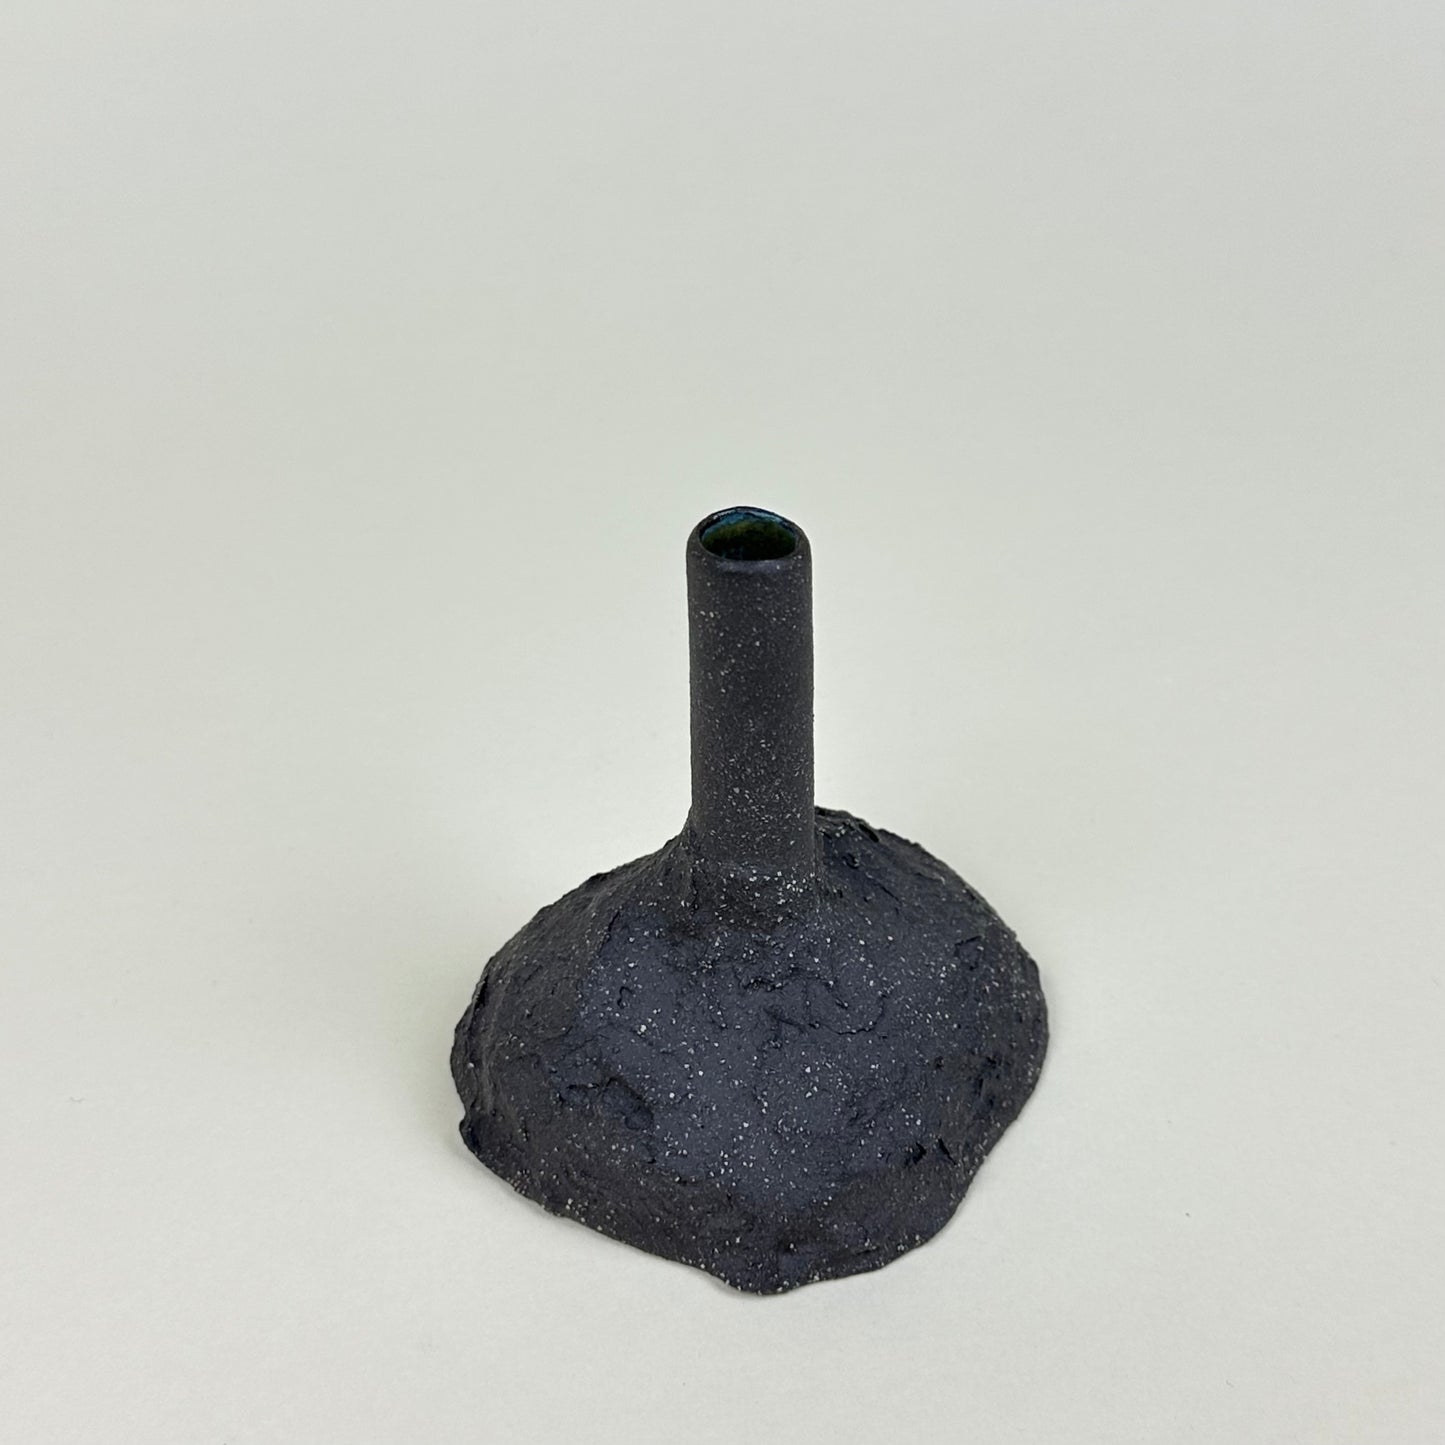 Small ceramic bud vase by Malwina Kleparska, anthracite grey